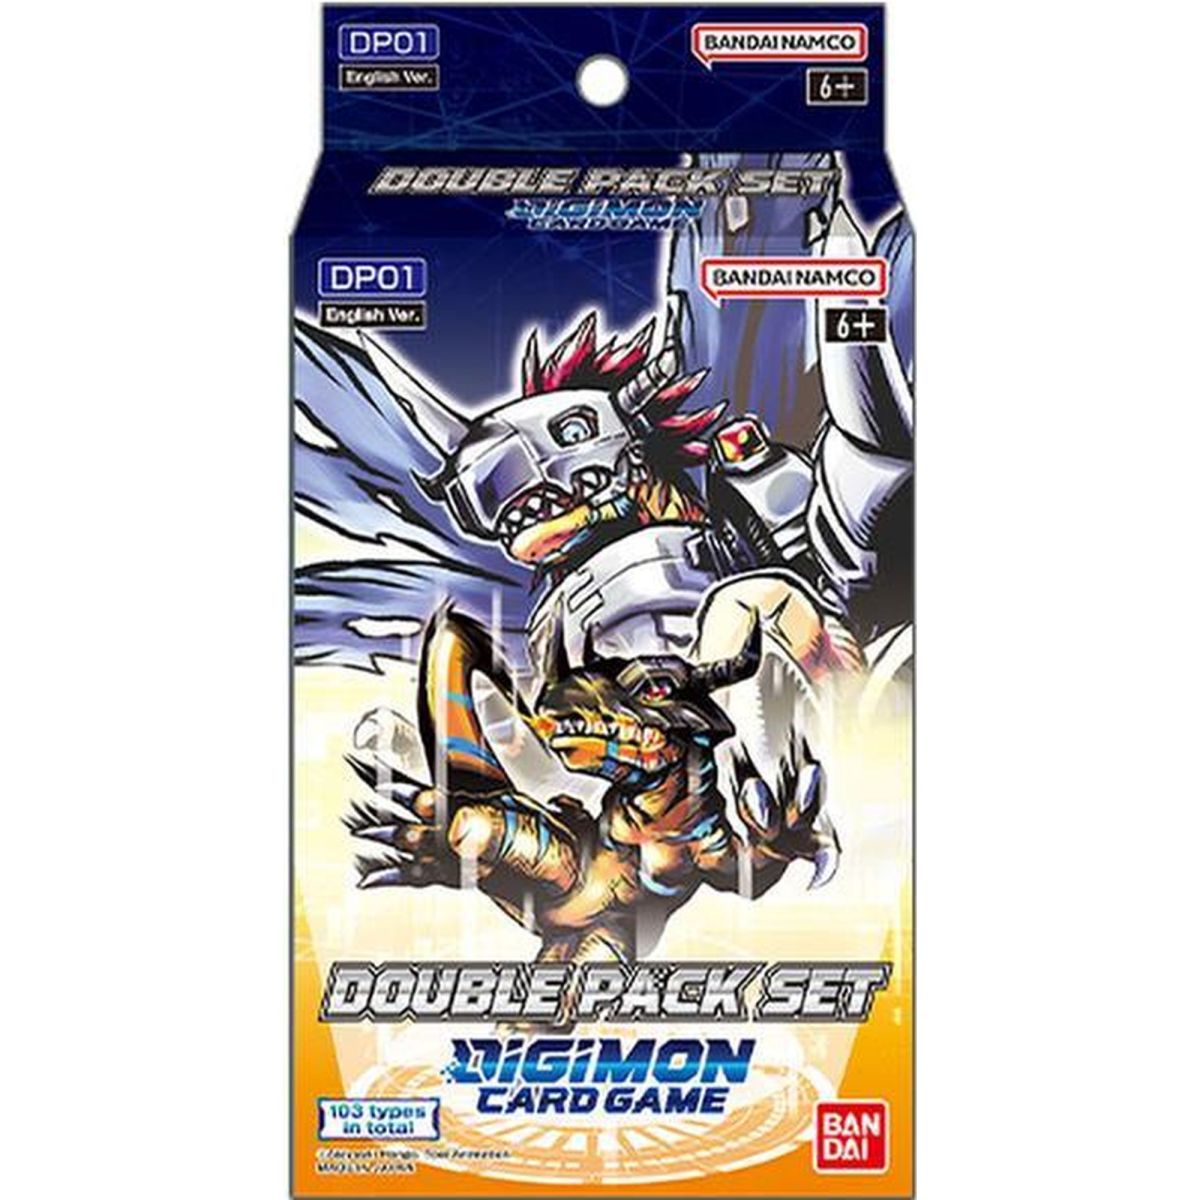 Item Digimon Card Game - Coffret - Double Pack Set - DP01 vol.1 - EN